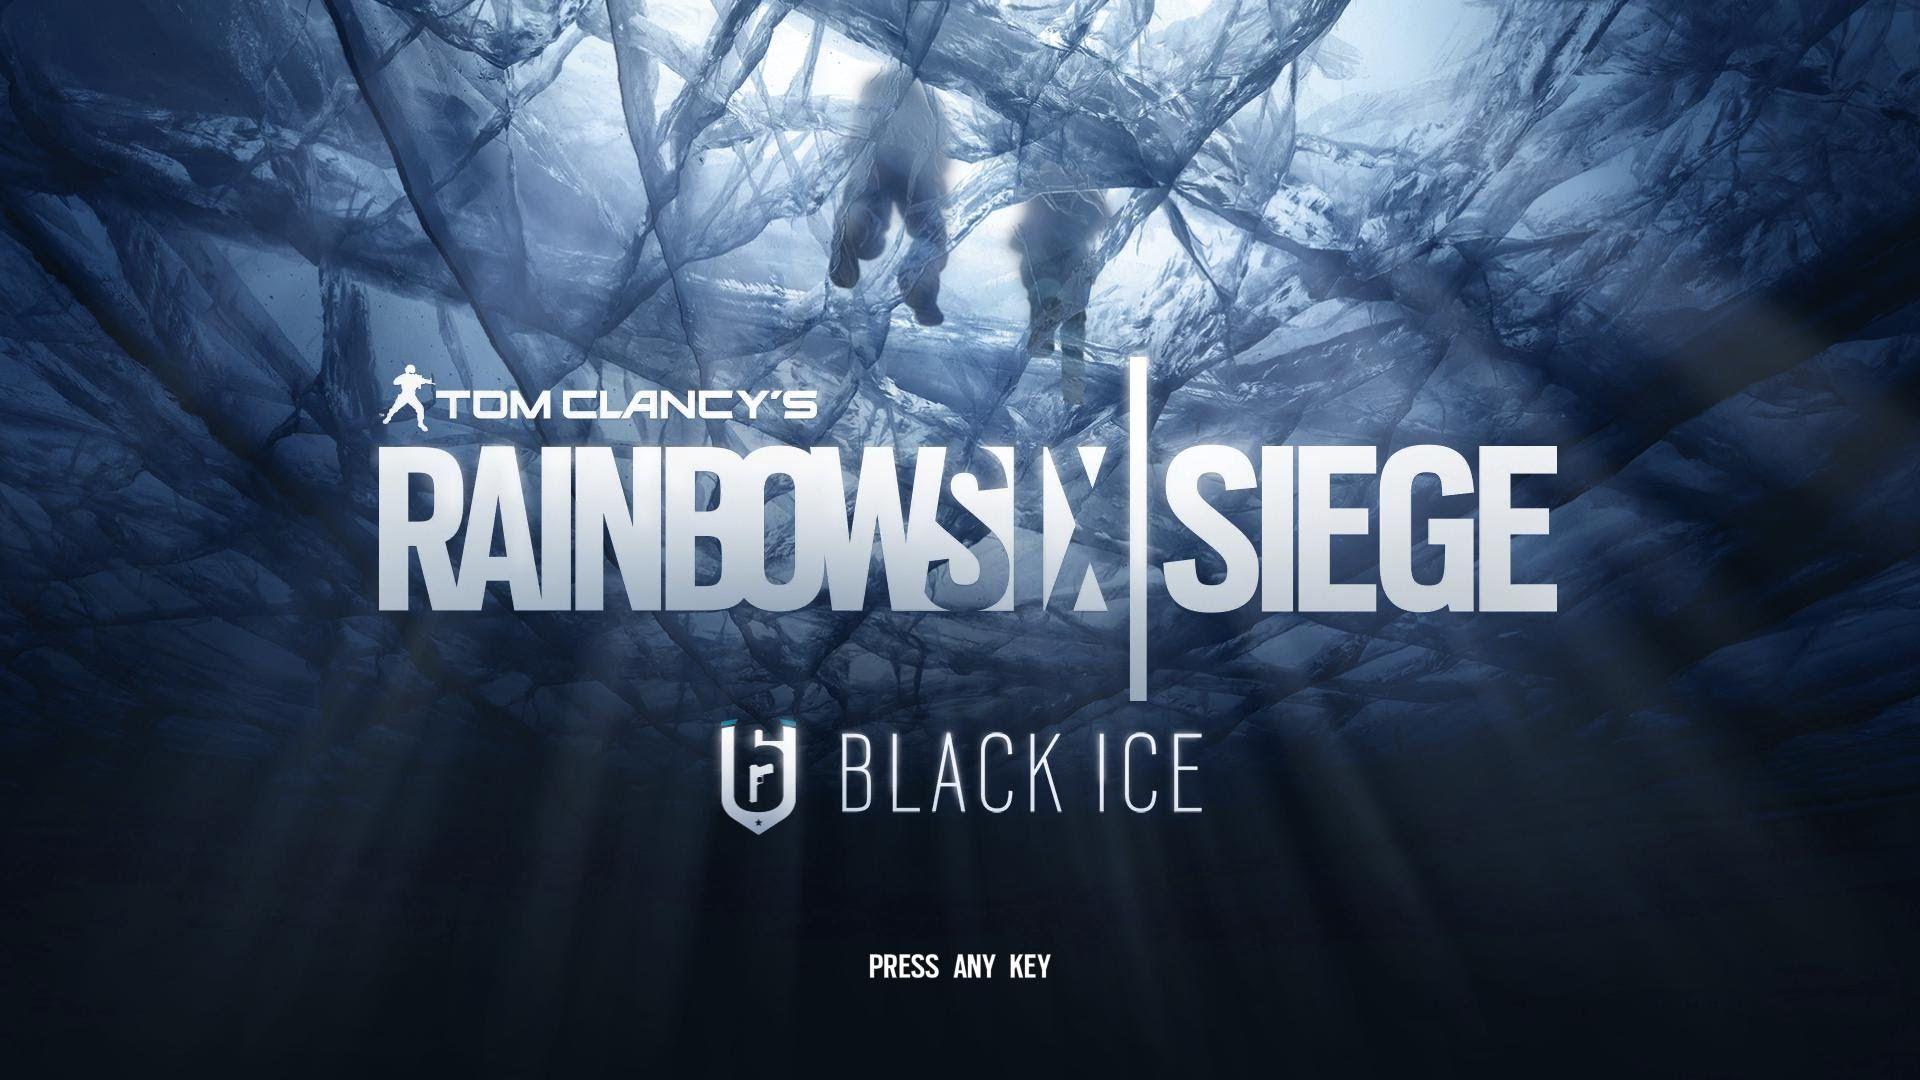 Tom Clancy's Rainbow Six Siege Black Ice DLC GamePlay. Tom Clancy's